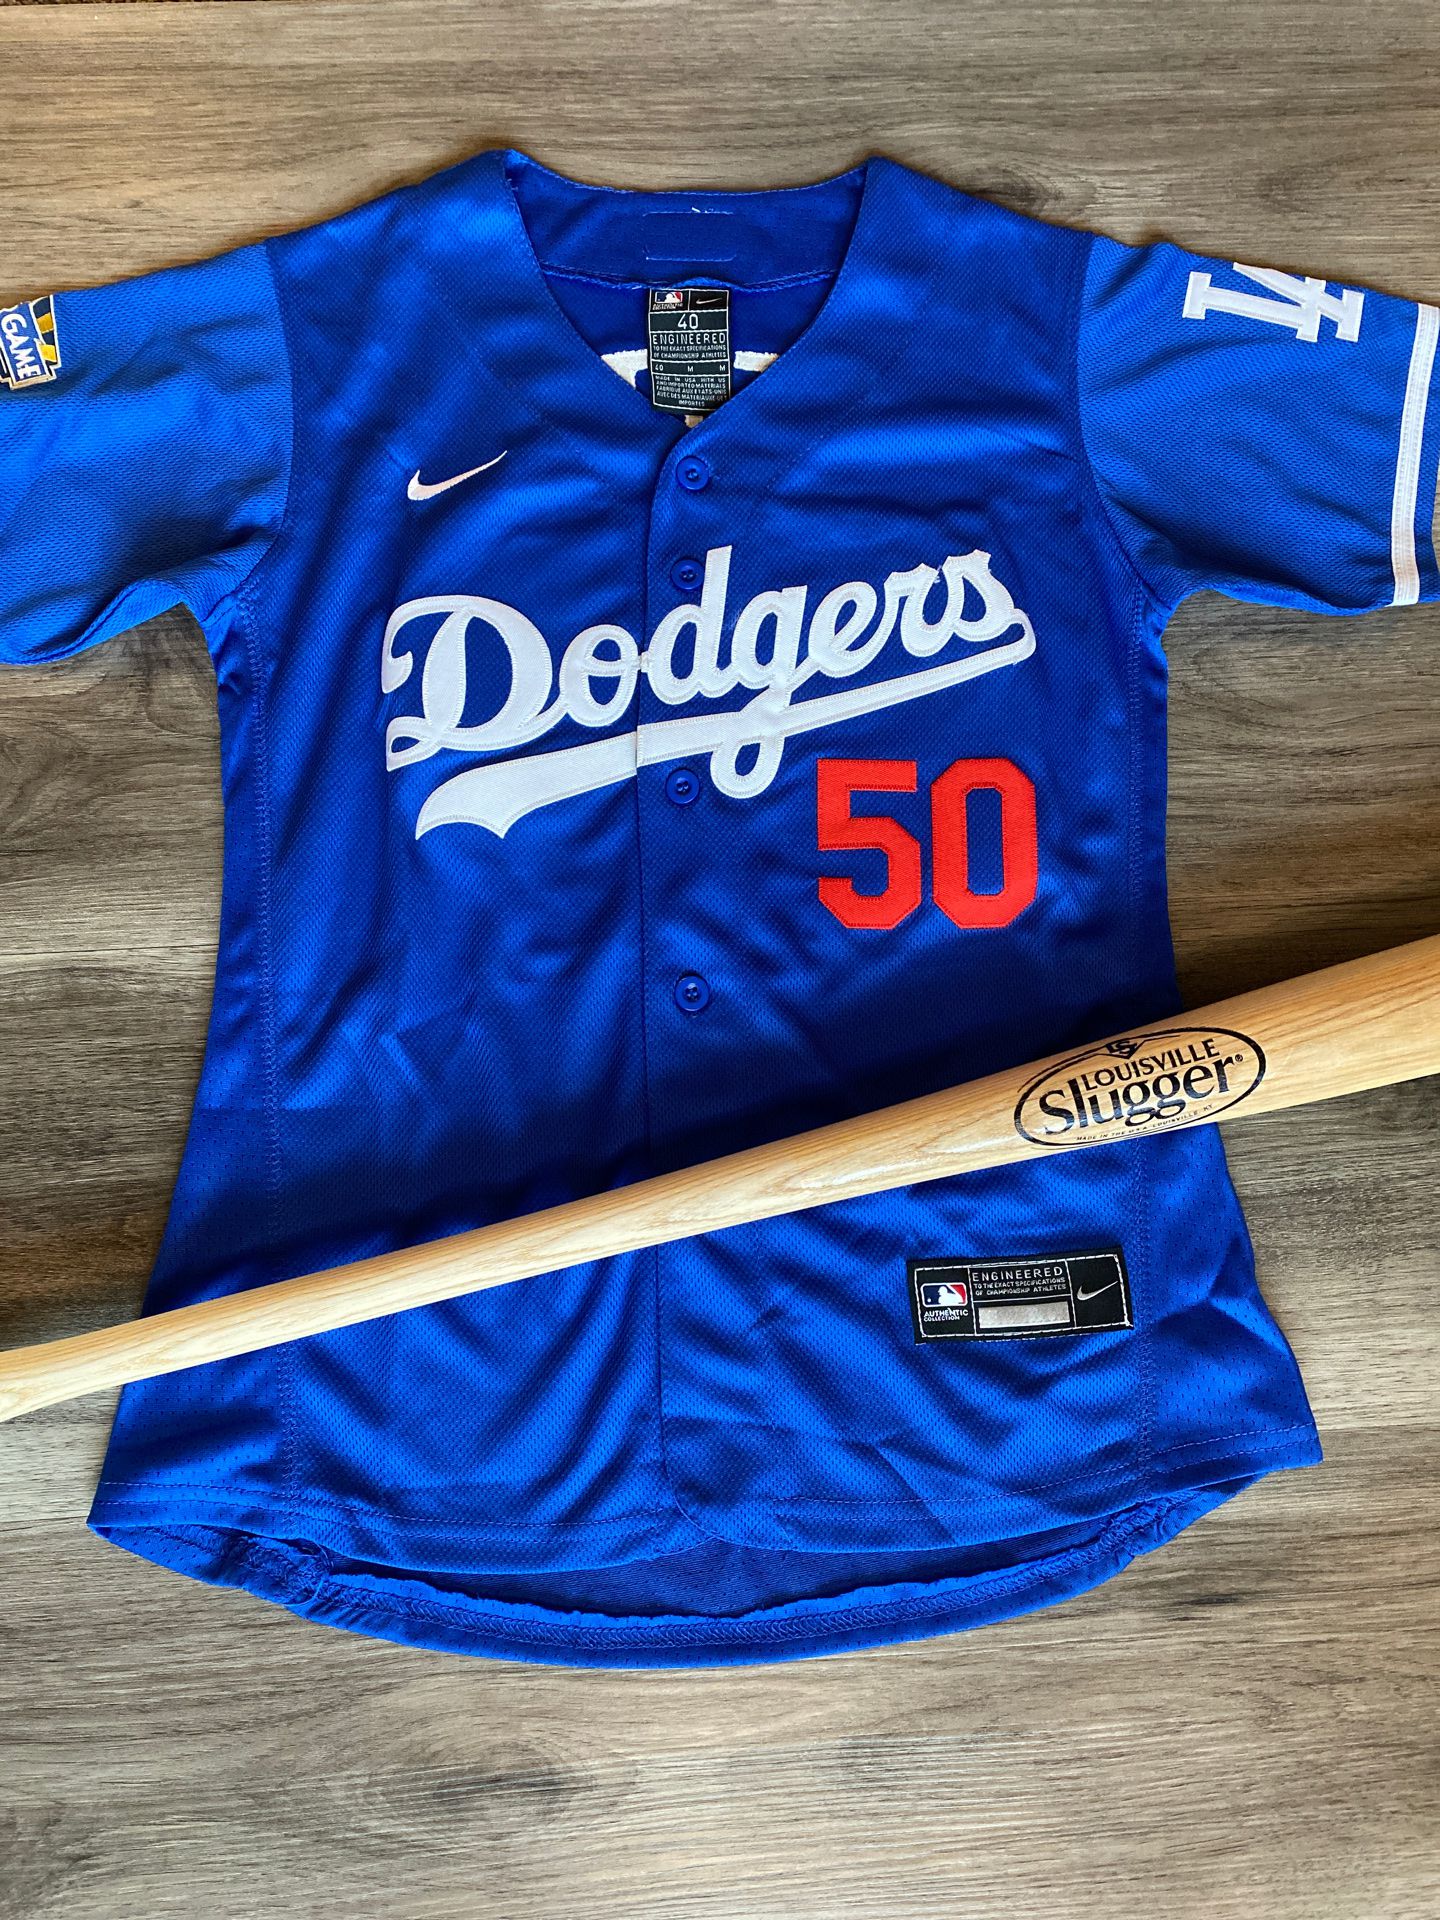 women’s Mookie betts custom Los Angeles dodgers Baseball jersey